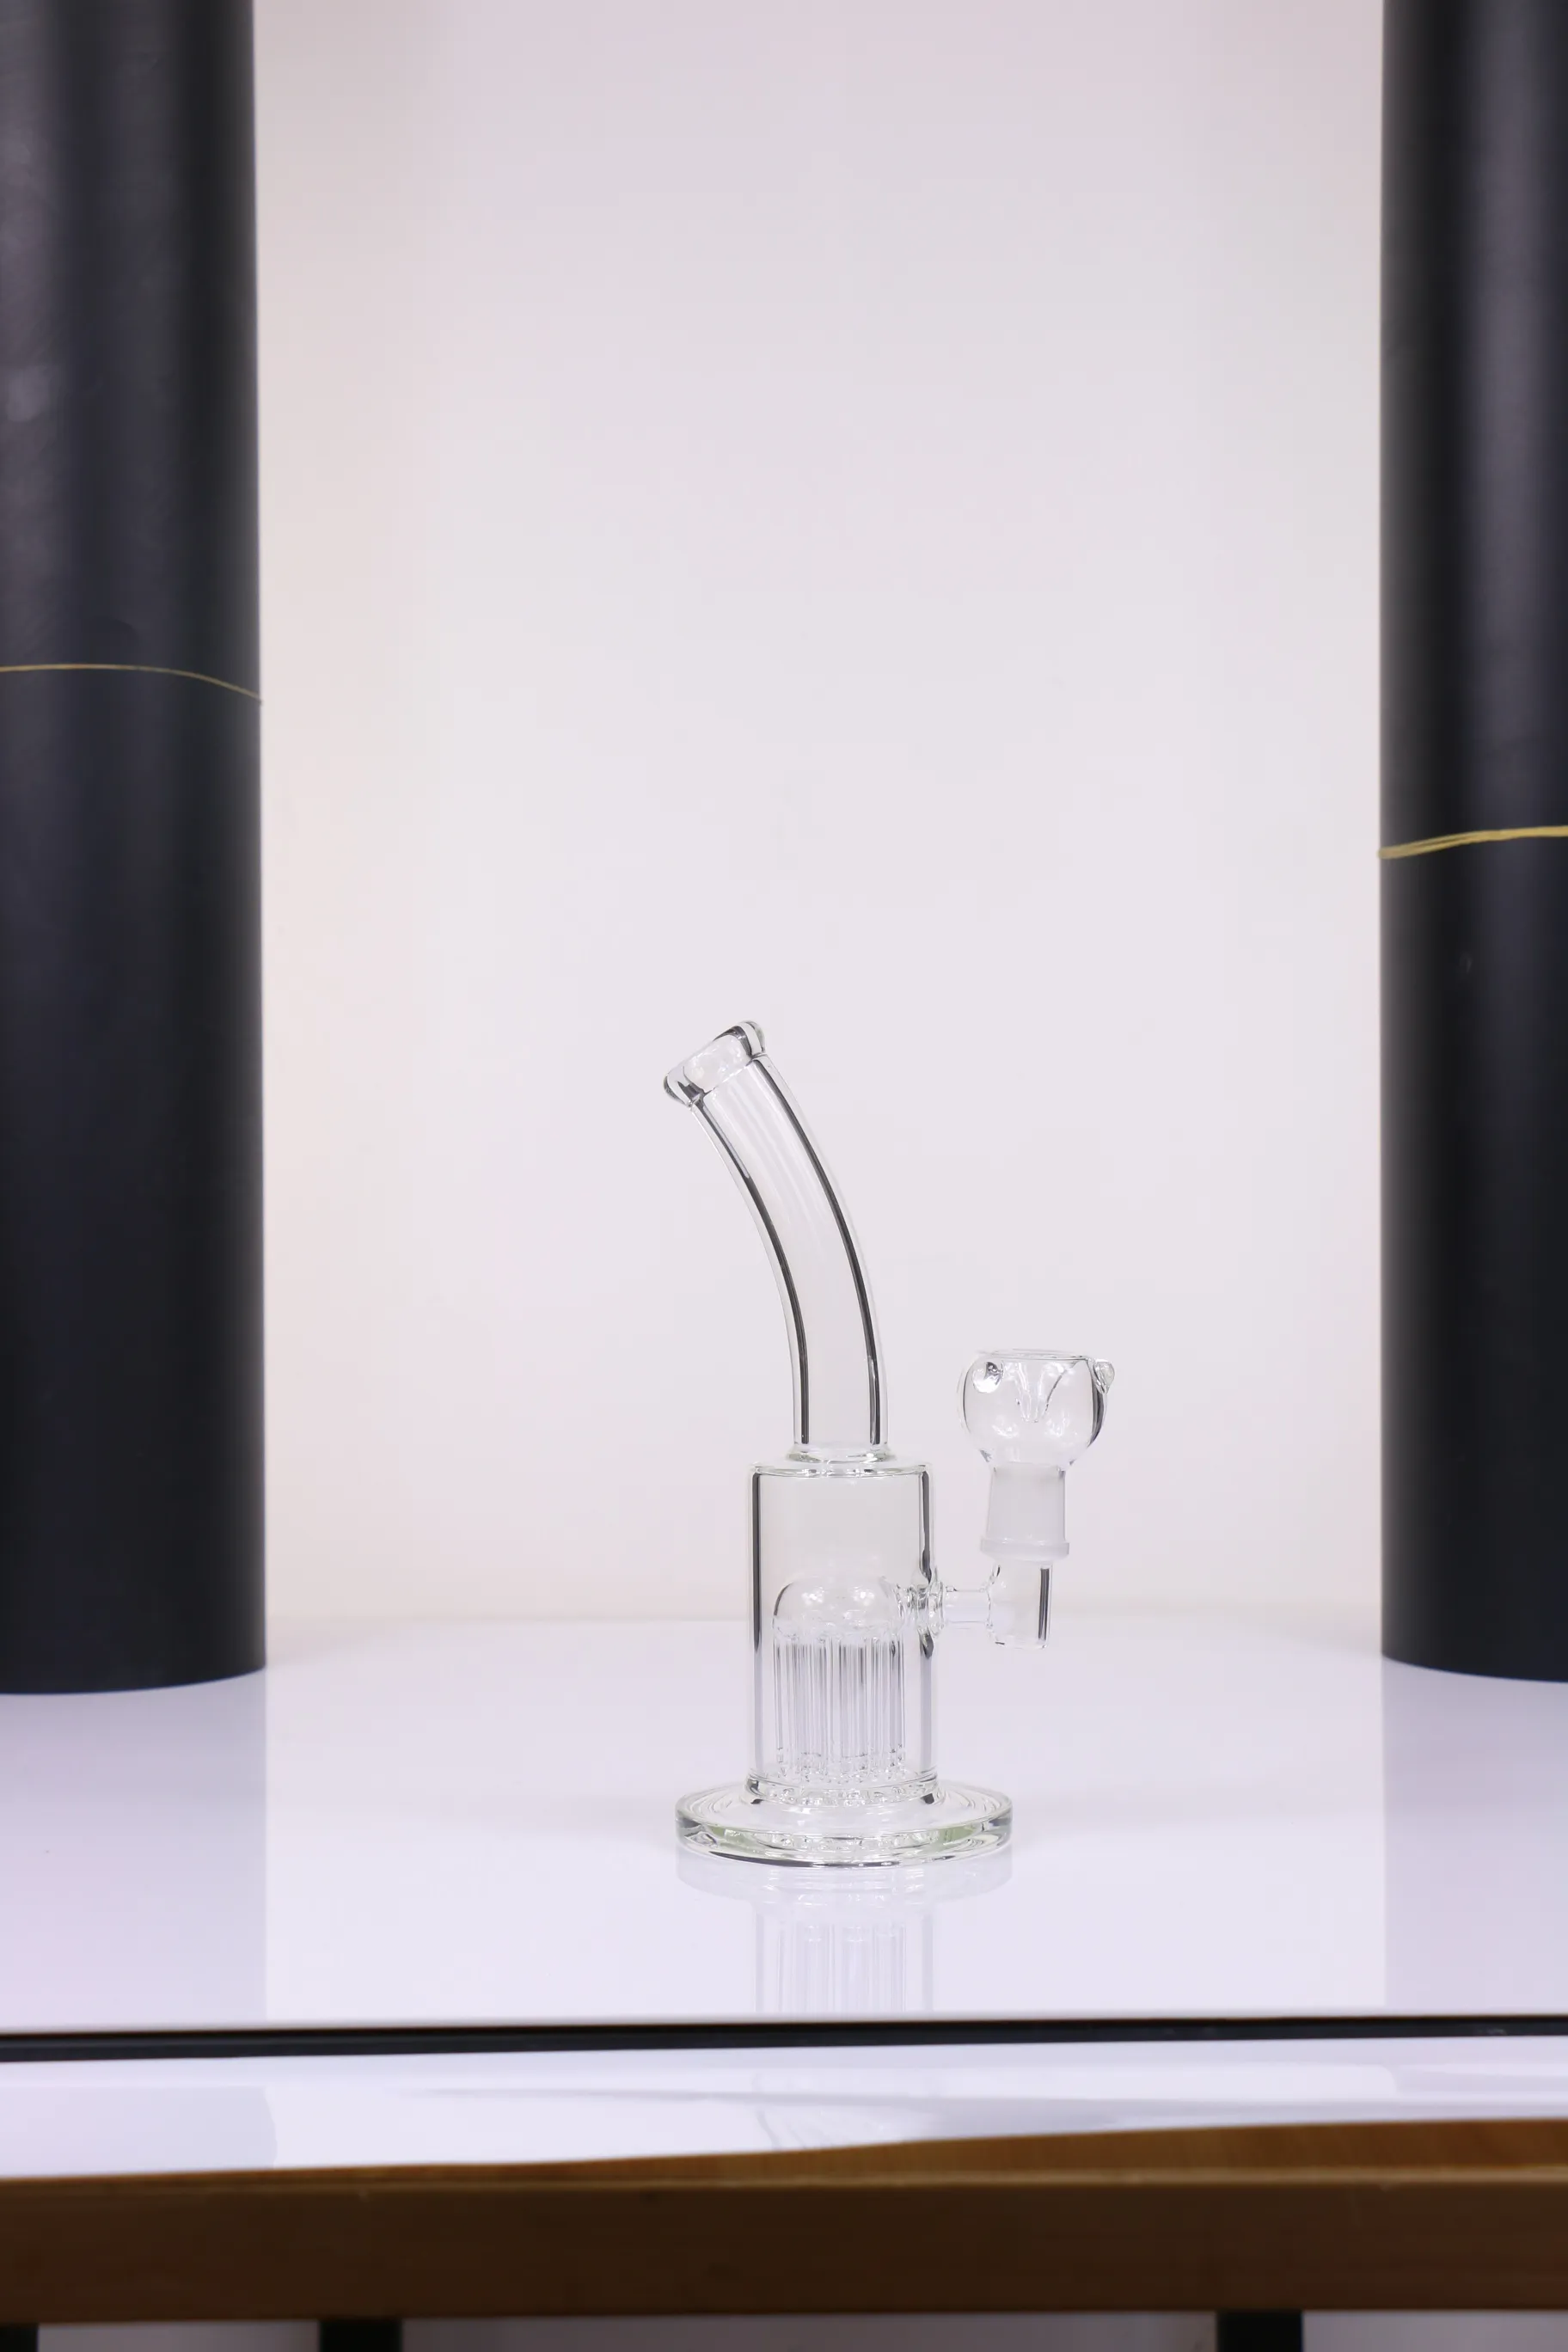 Wasserhaare Neue Gestaltung 8 Zoll Wasserbong mit Glasstück 19mm Männchen Gelenkgröße für Rohrraucher